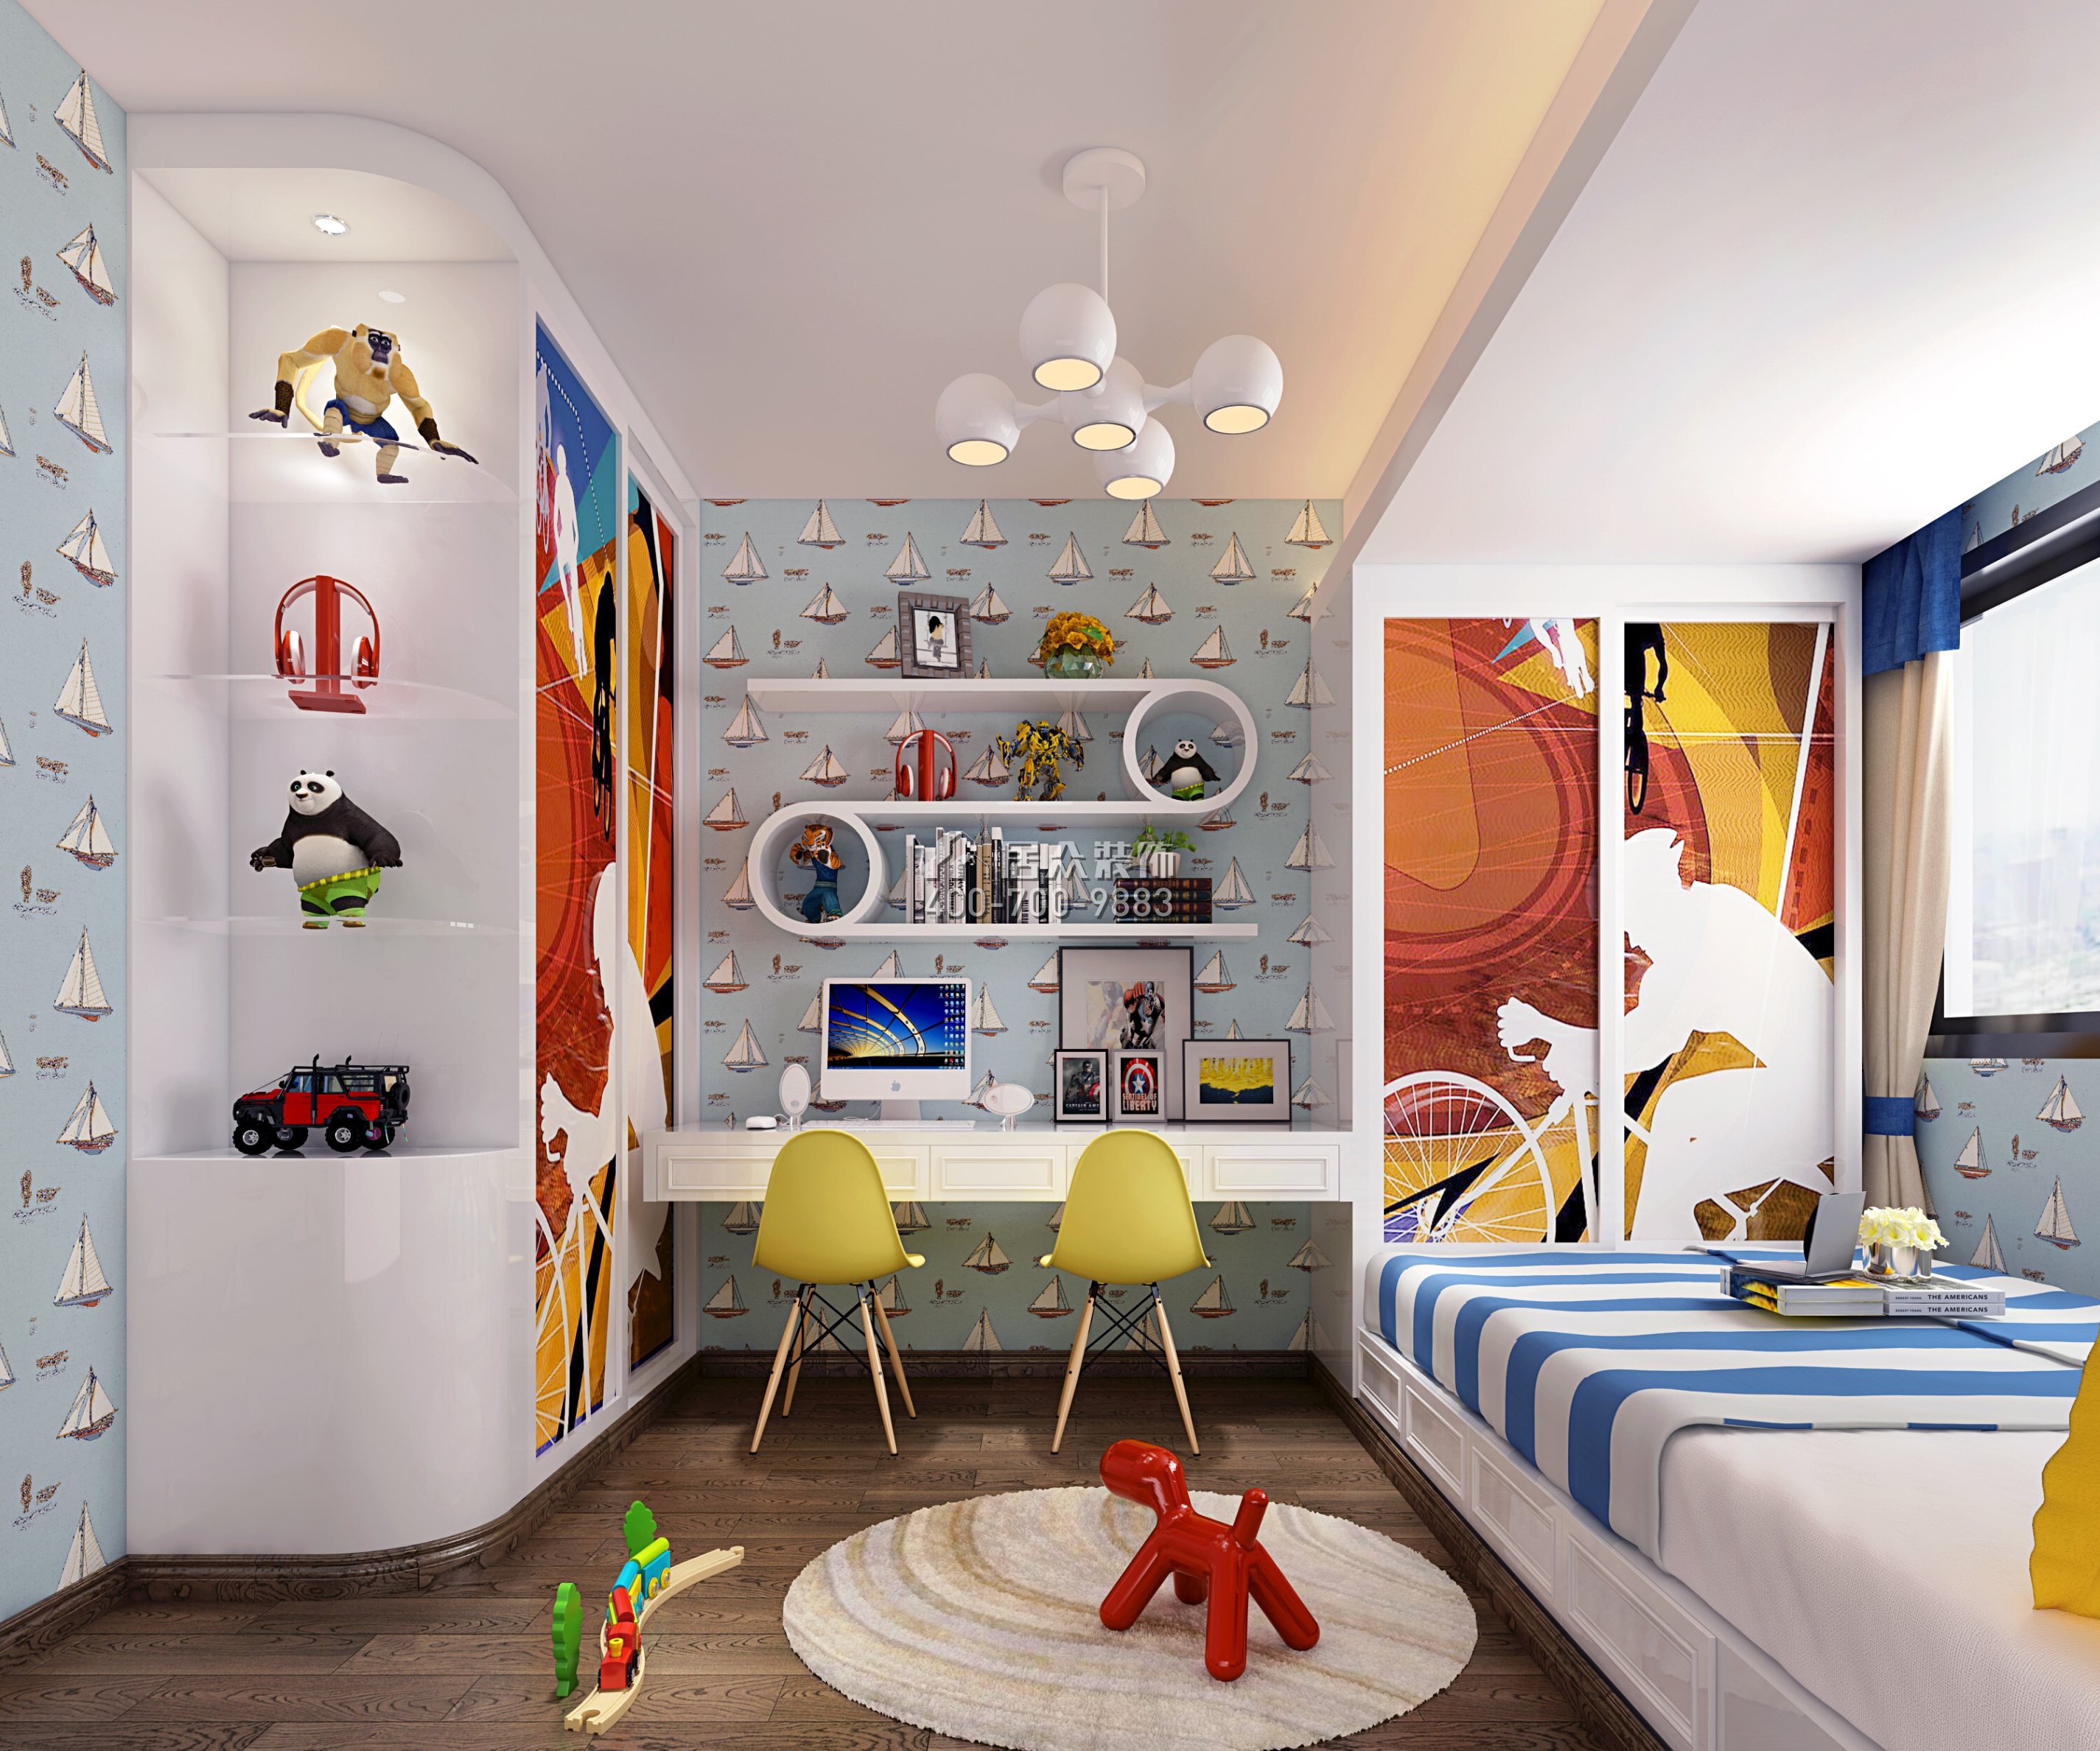 保利天汇130平方米北欧风格平层户型儿童房装修效果图